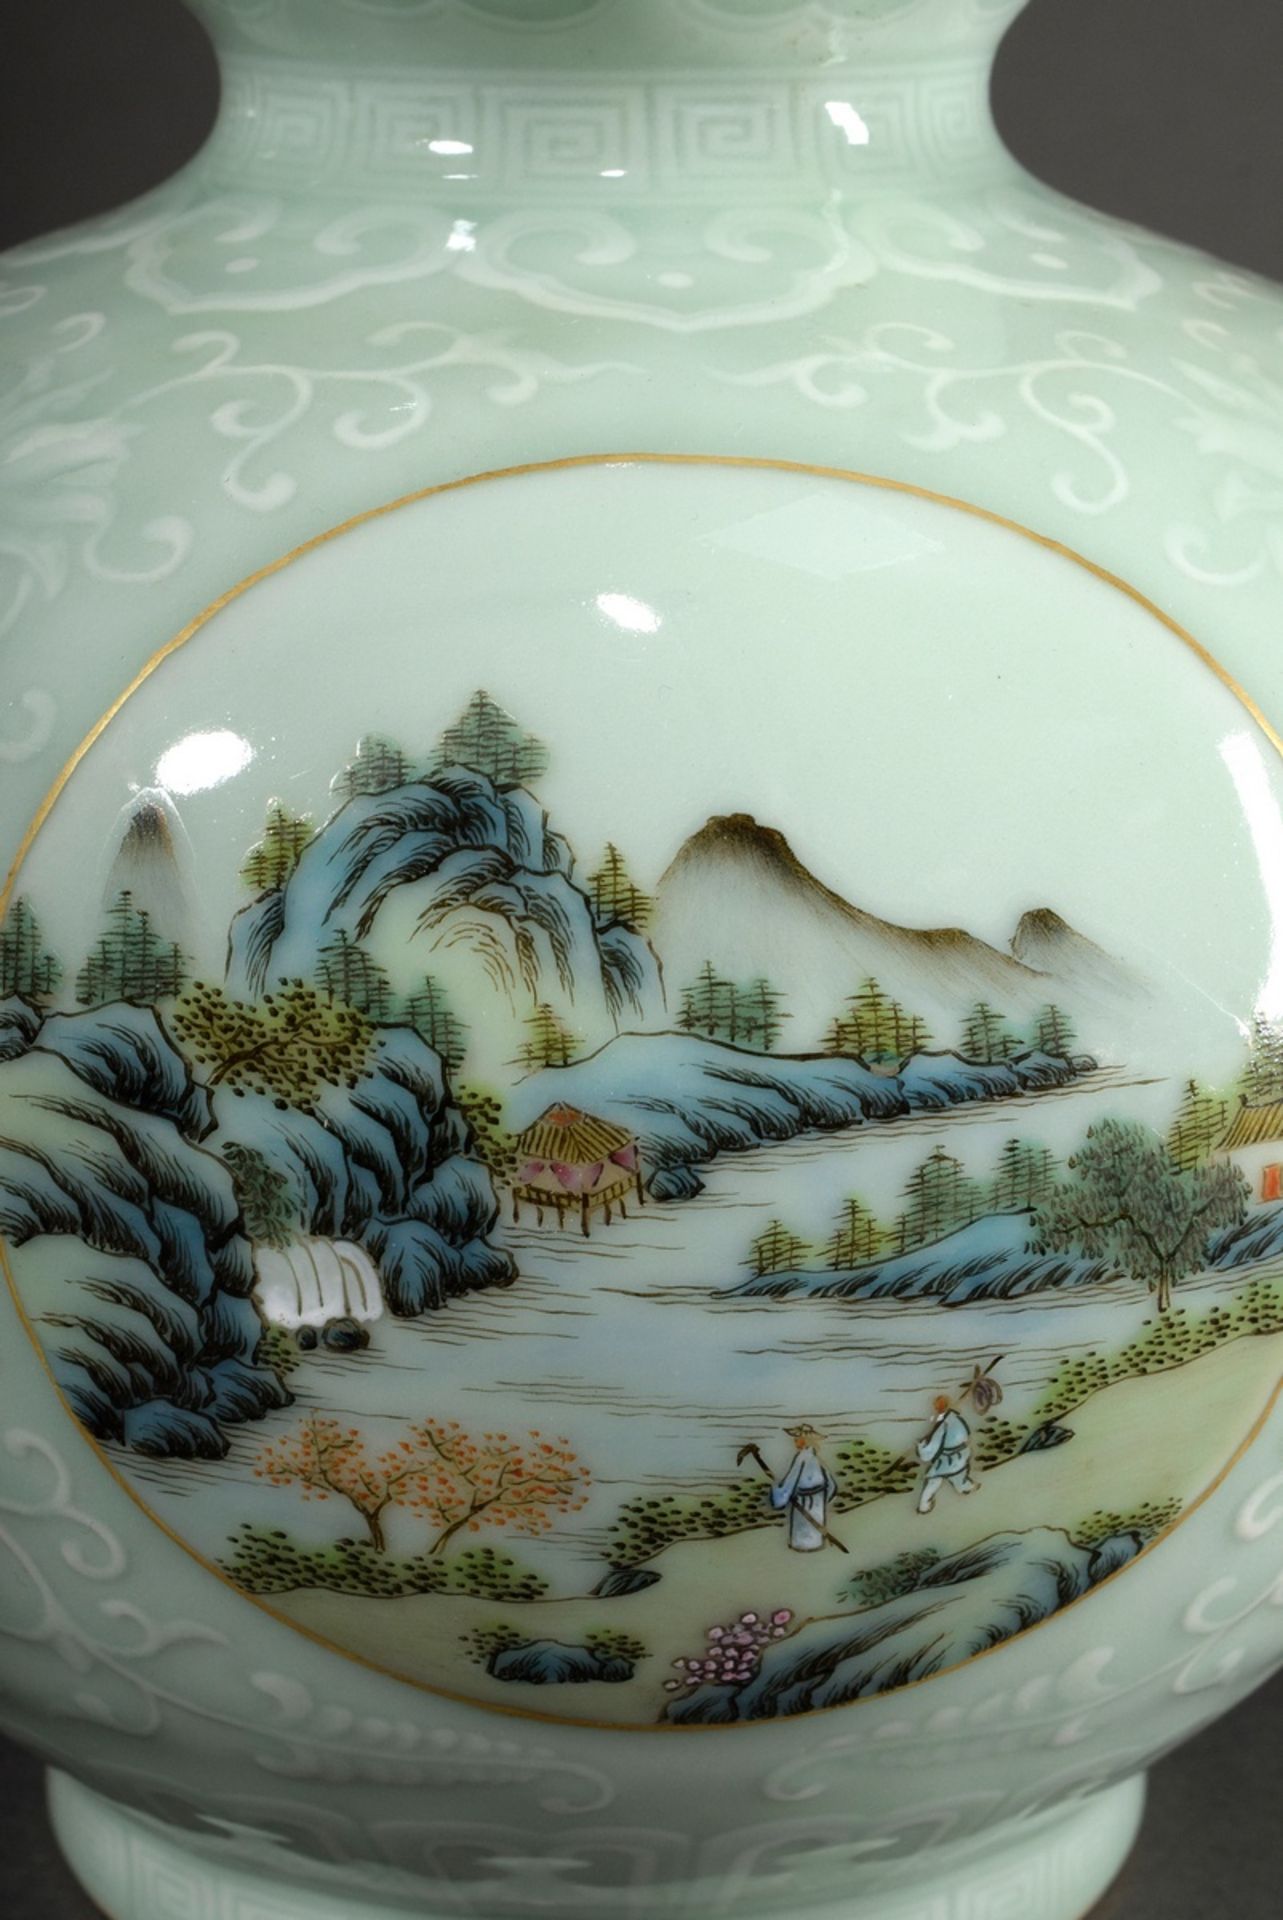 Doppelbauchige Porzellan Kalebassenvase mit Seladonglasur und Pâte sur pâte Ornamenten sowie runden - Bild 4 aus 6